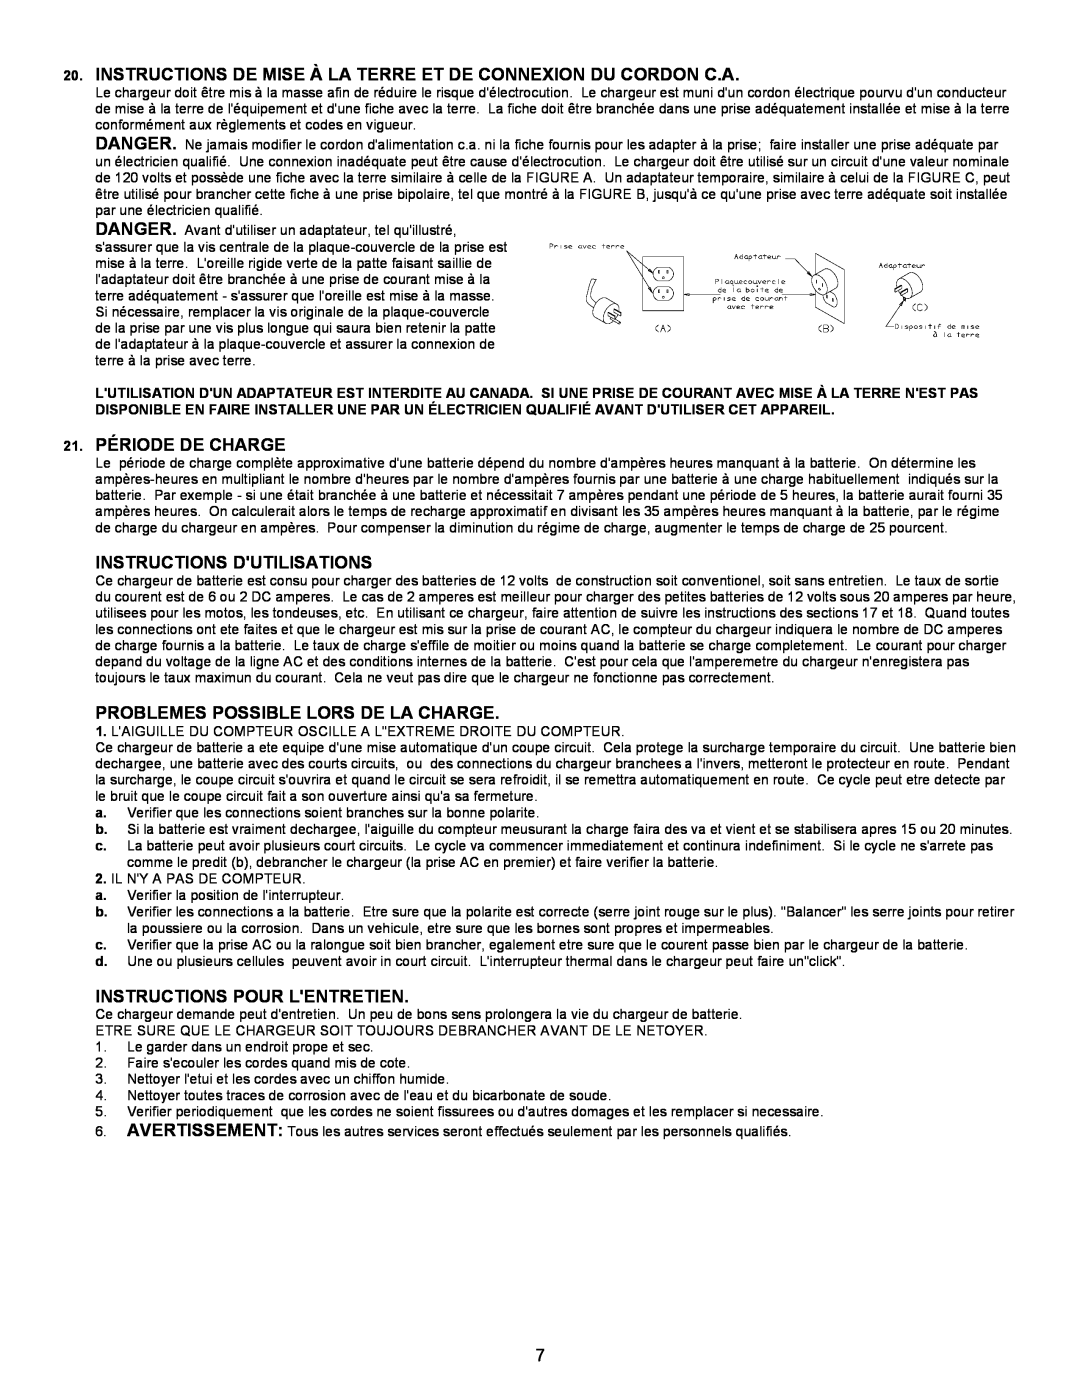 Atec 9182 Instructions De Mise À La Terre Et De Connexion Du Cordon C.A, 21. PÉRIODE DE CHARGE, Instructions Dutilisations 